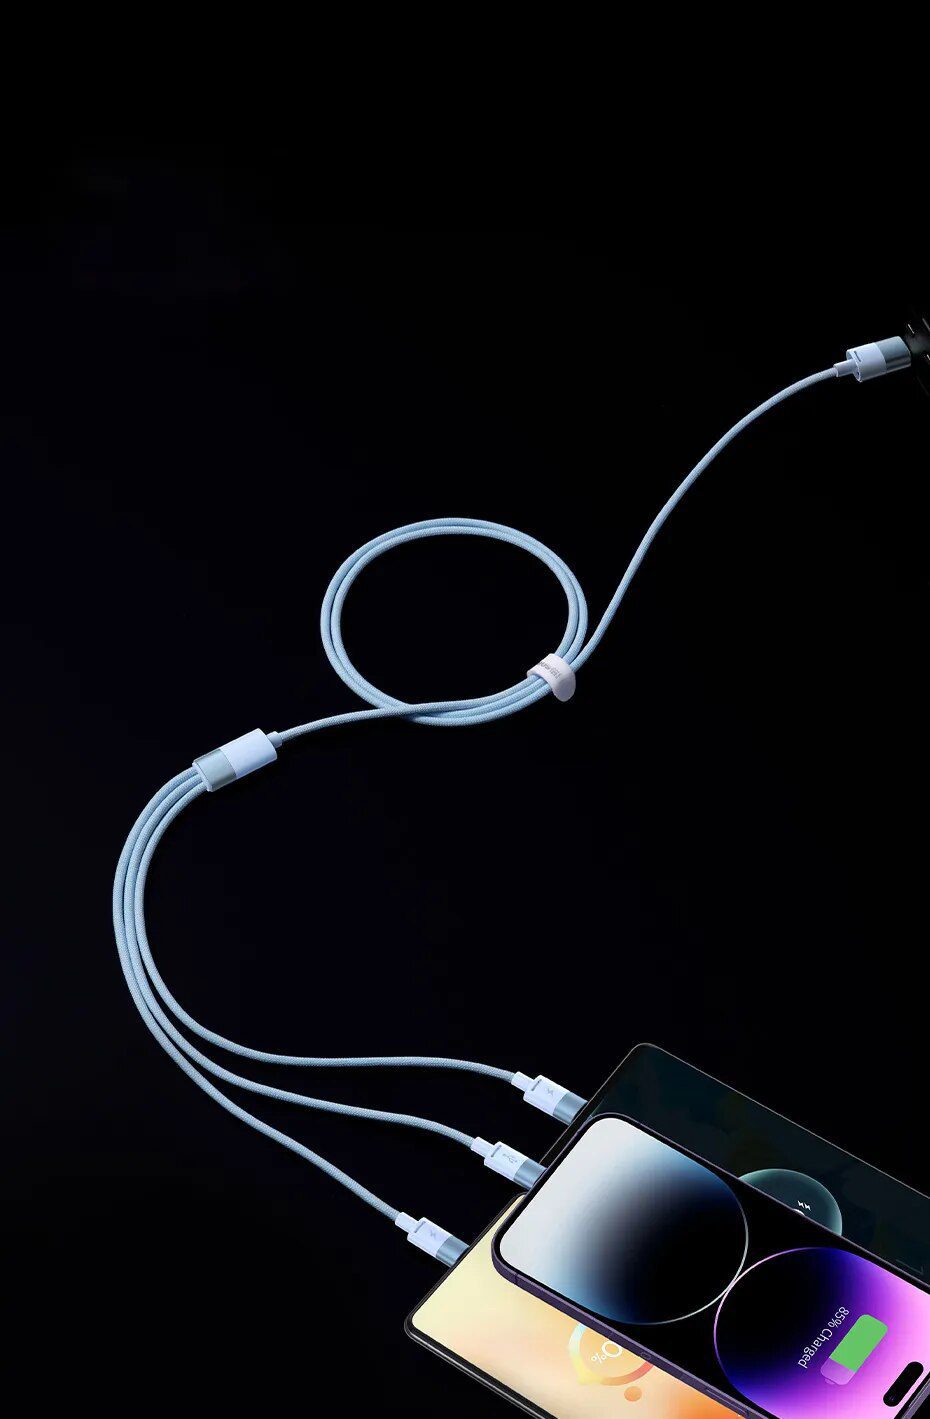 Baseus câble 3-in-1 chargeur magnetique - MicroUSB, USB-C, Lightning 1  metre - Allo Réparateur - Réparation iPhone, iPad, MacBook Pro, iMac,  X-Box, Playstation, Nintendo et Samsung en Tunisie